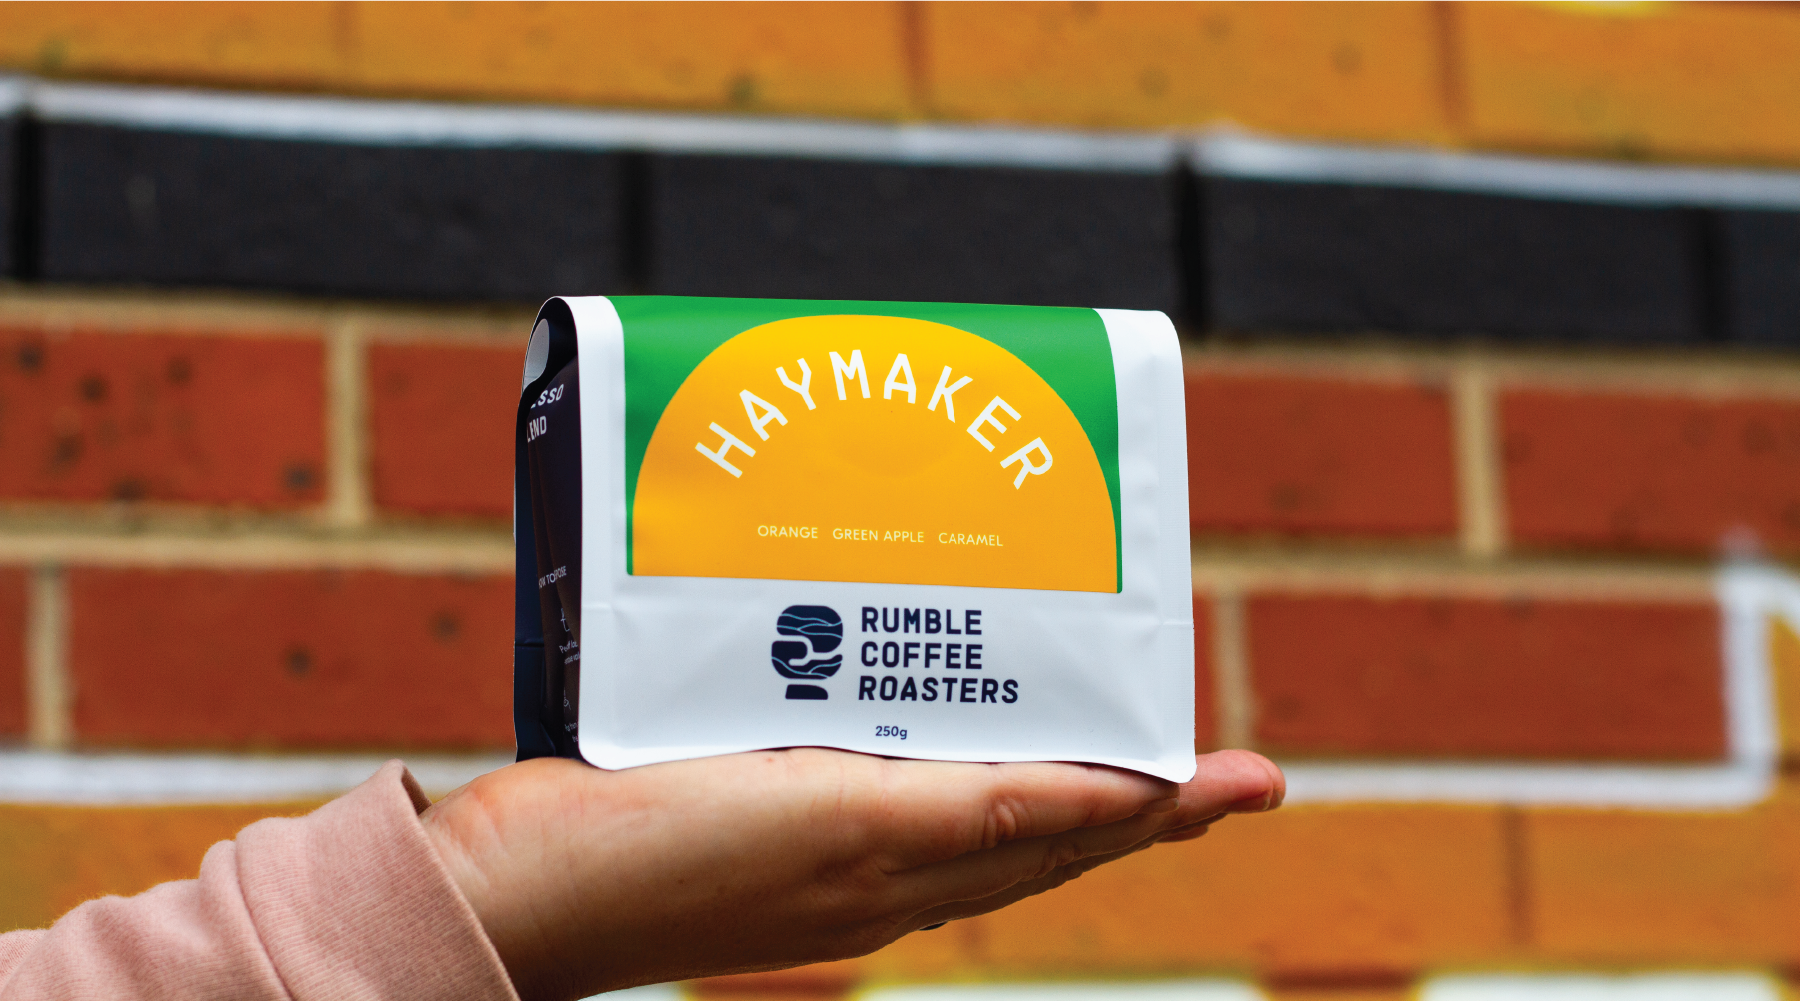 Rumble Coffee Roasters Haymaker blend